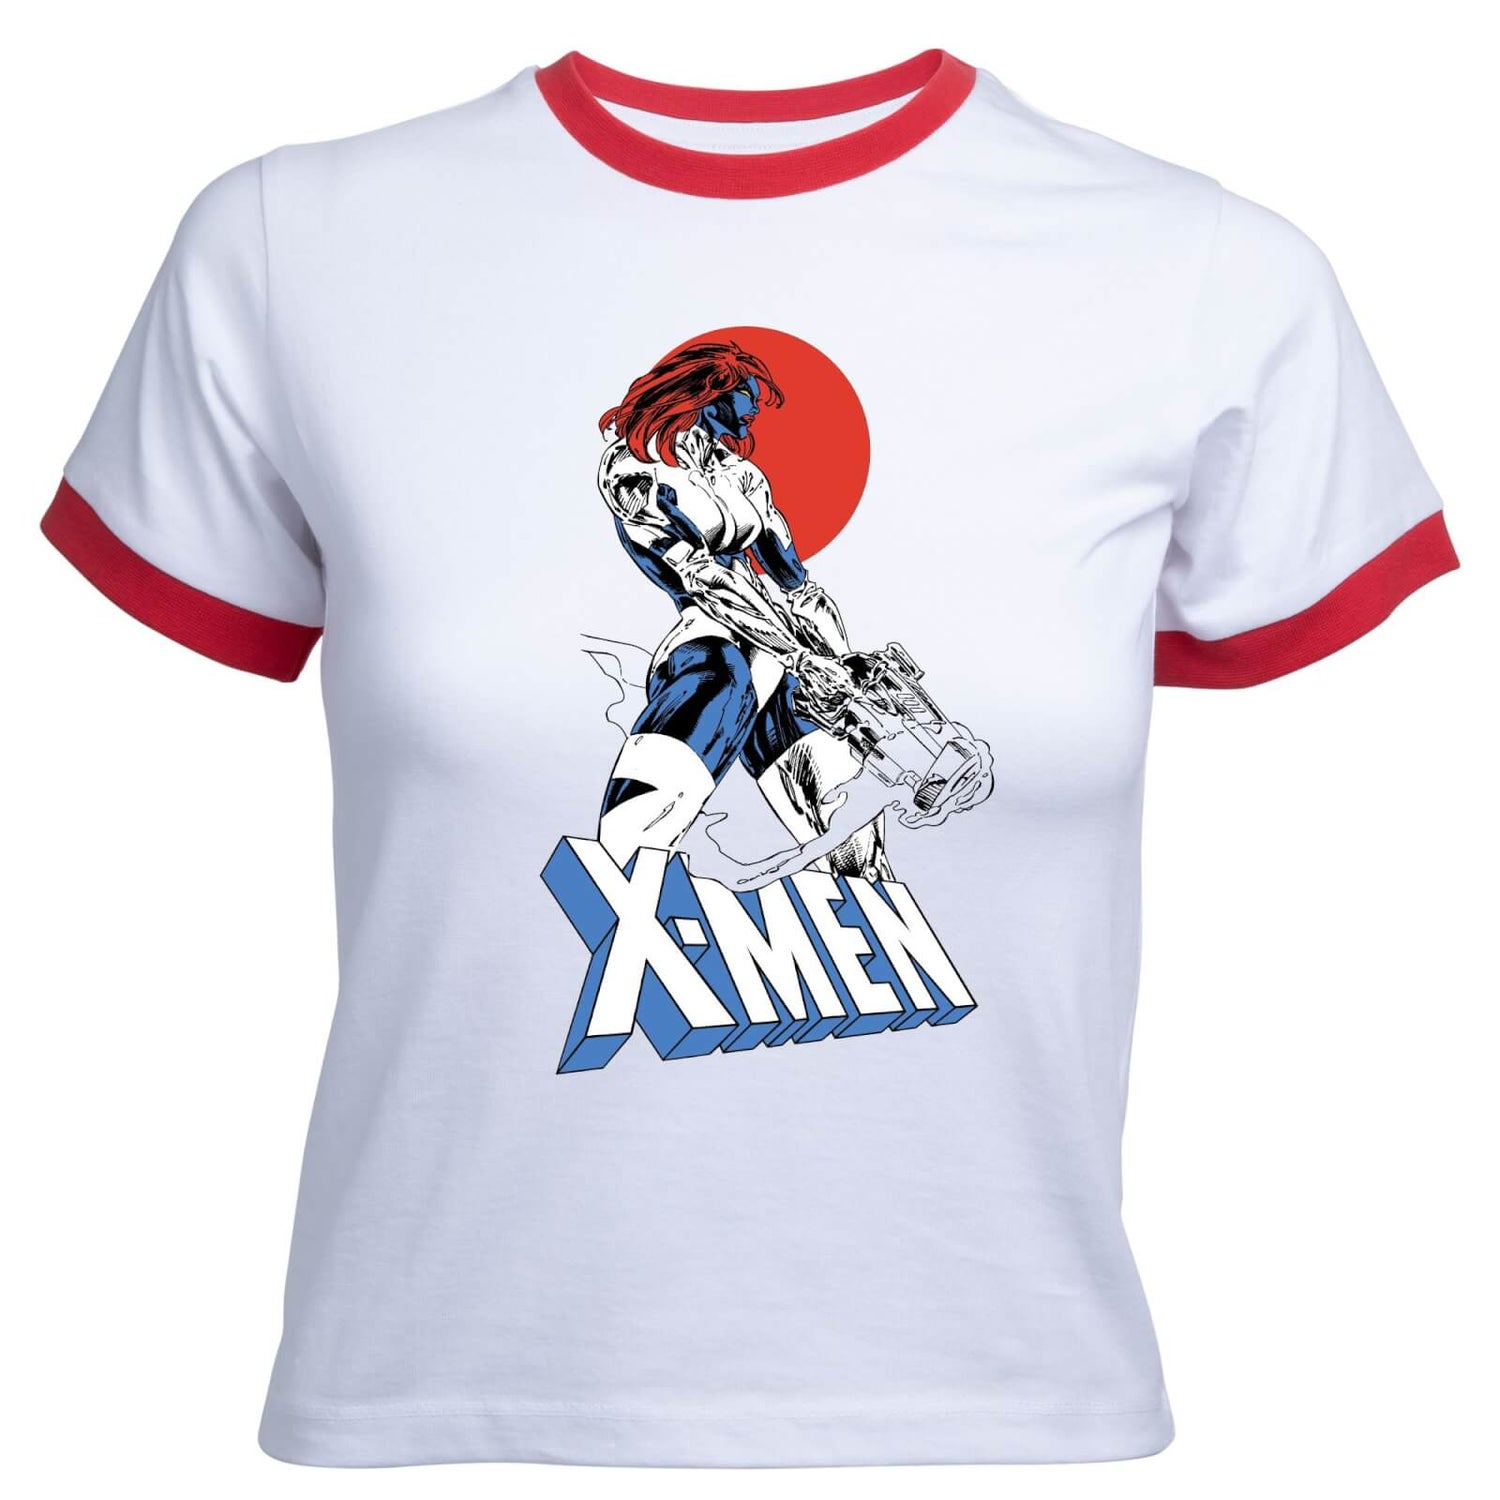 X-Men Mystique Women's Cropped Ringer T-Shirt - White Red